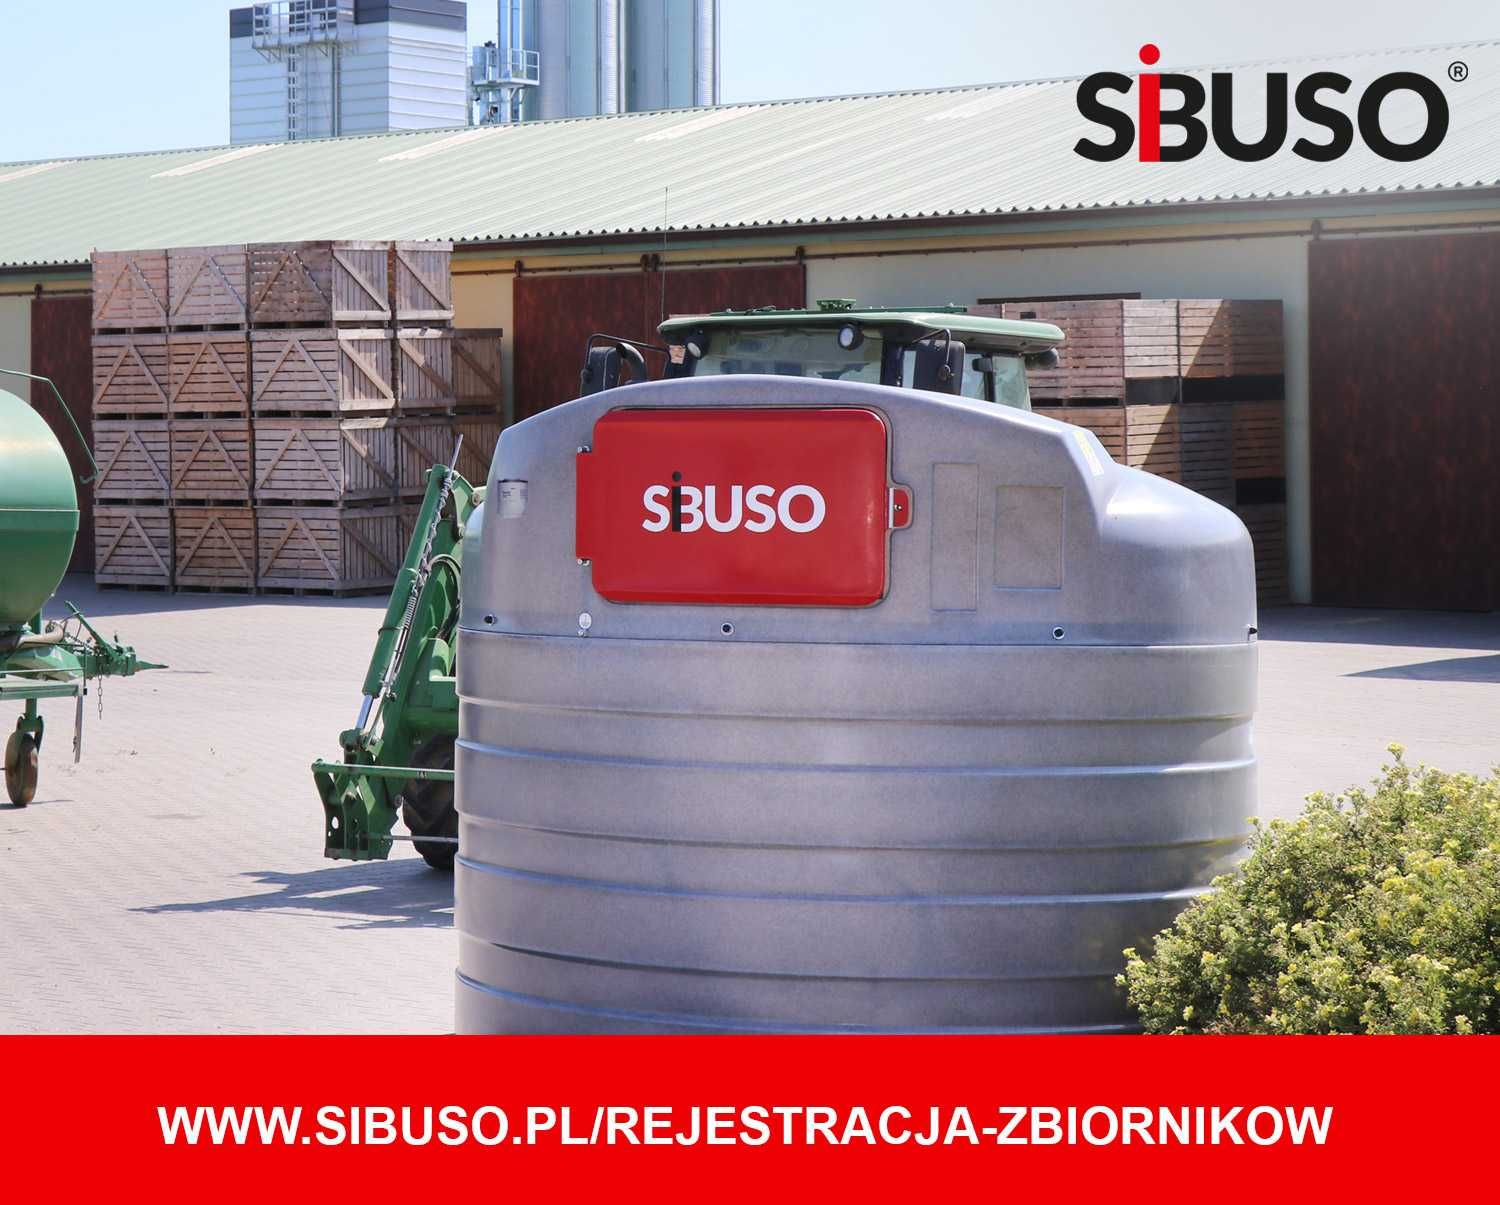 Zbiornik paliwo olej napędowy SIBUSO 5000L 5 lat gwarancji na pompę!!!